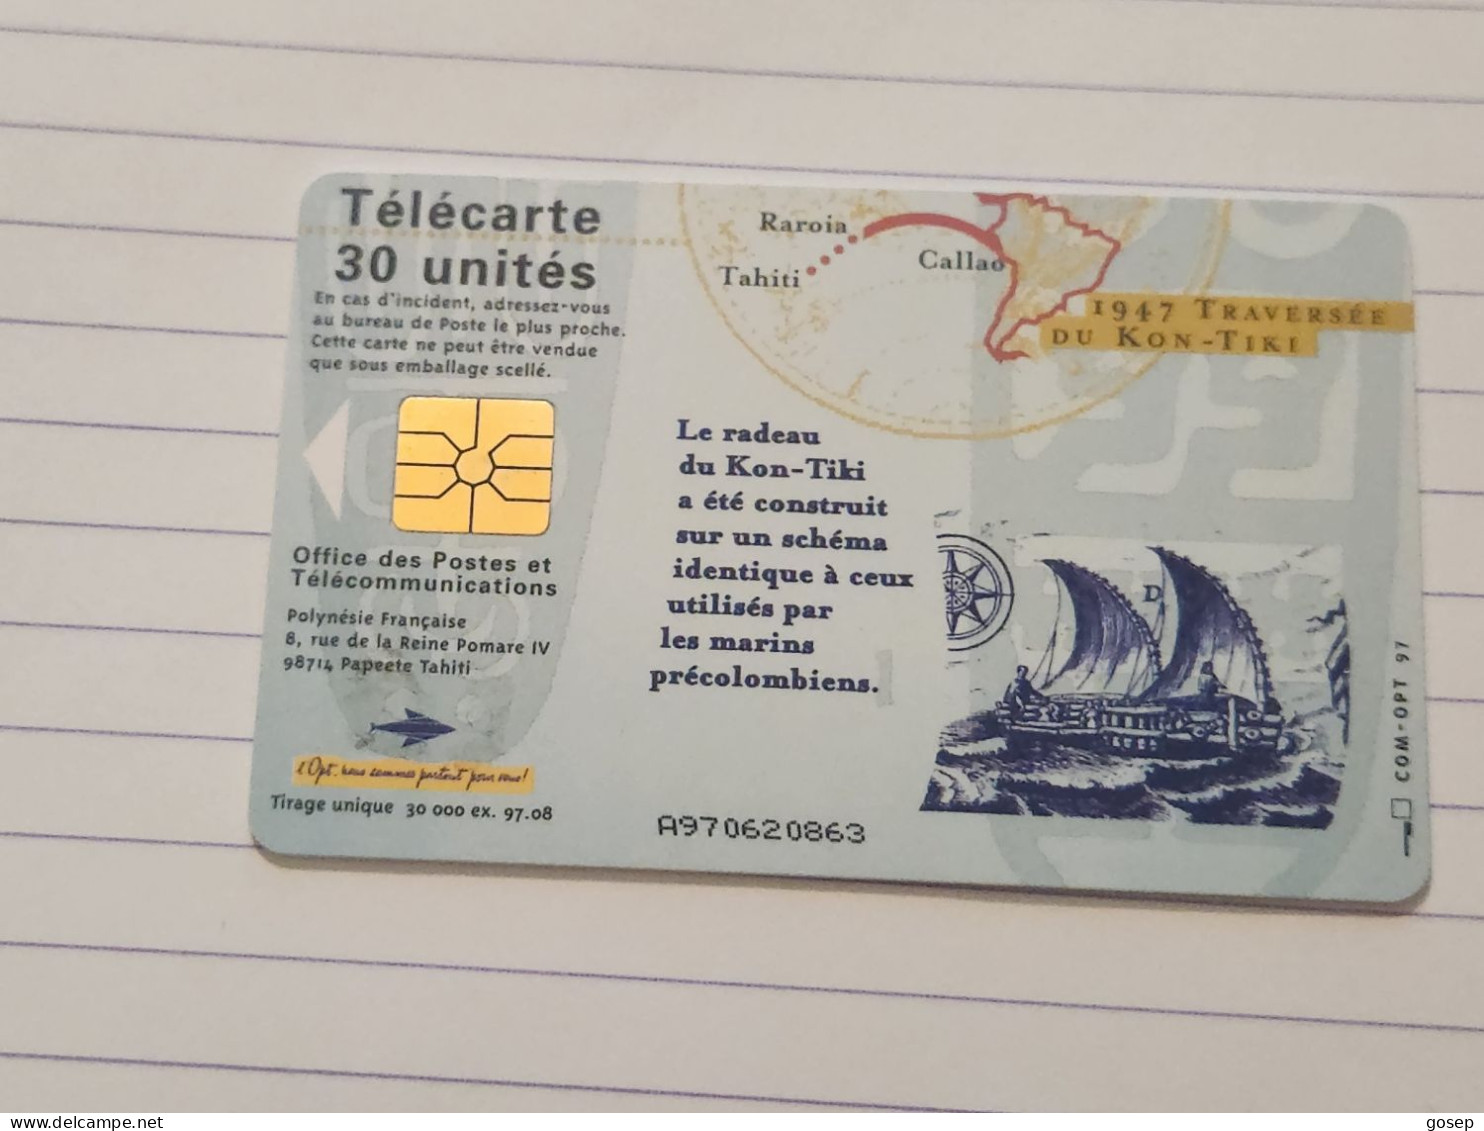 French Polynesia-(FP-060)-OKON-TIKI-(21)(A970620863)-(30units)-(tirage-30.000)-used Card+1card Prepiad Free - French Polynesia